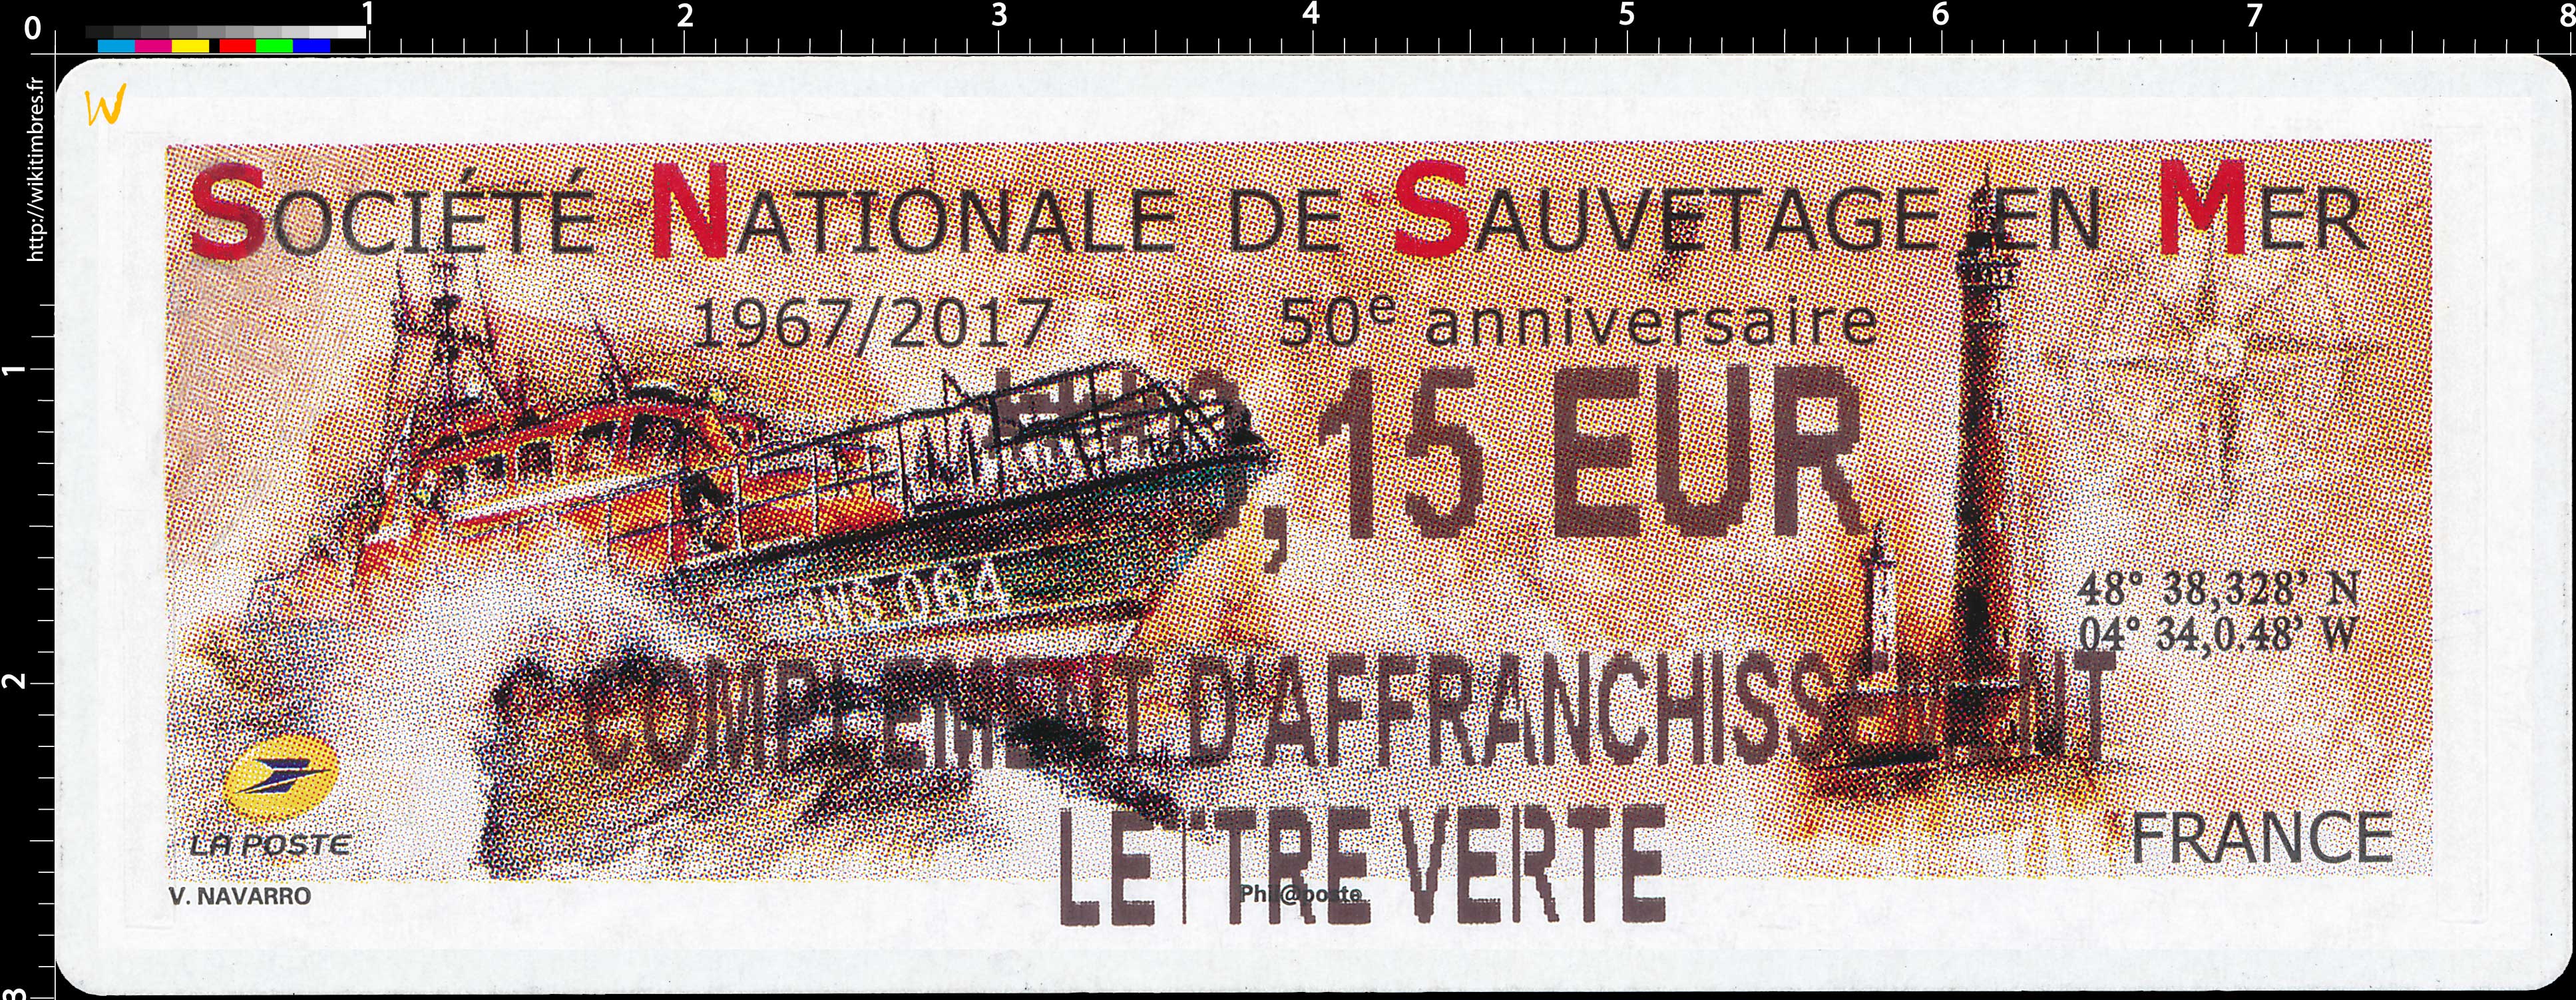 2017 Société Nationale de Sauvetage en Mer 1967/2017 50e anniversaire